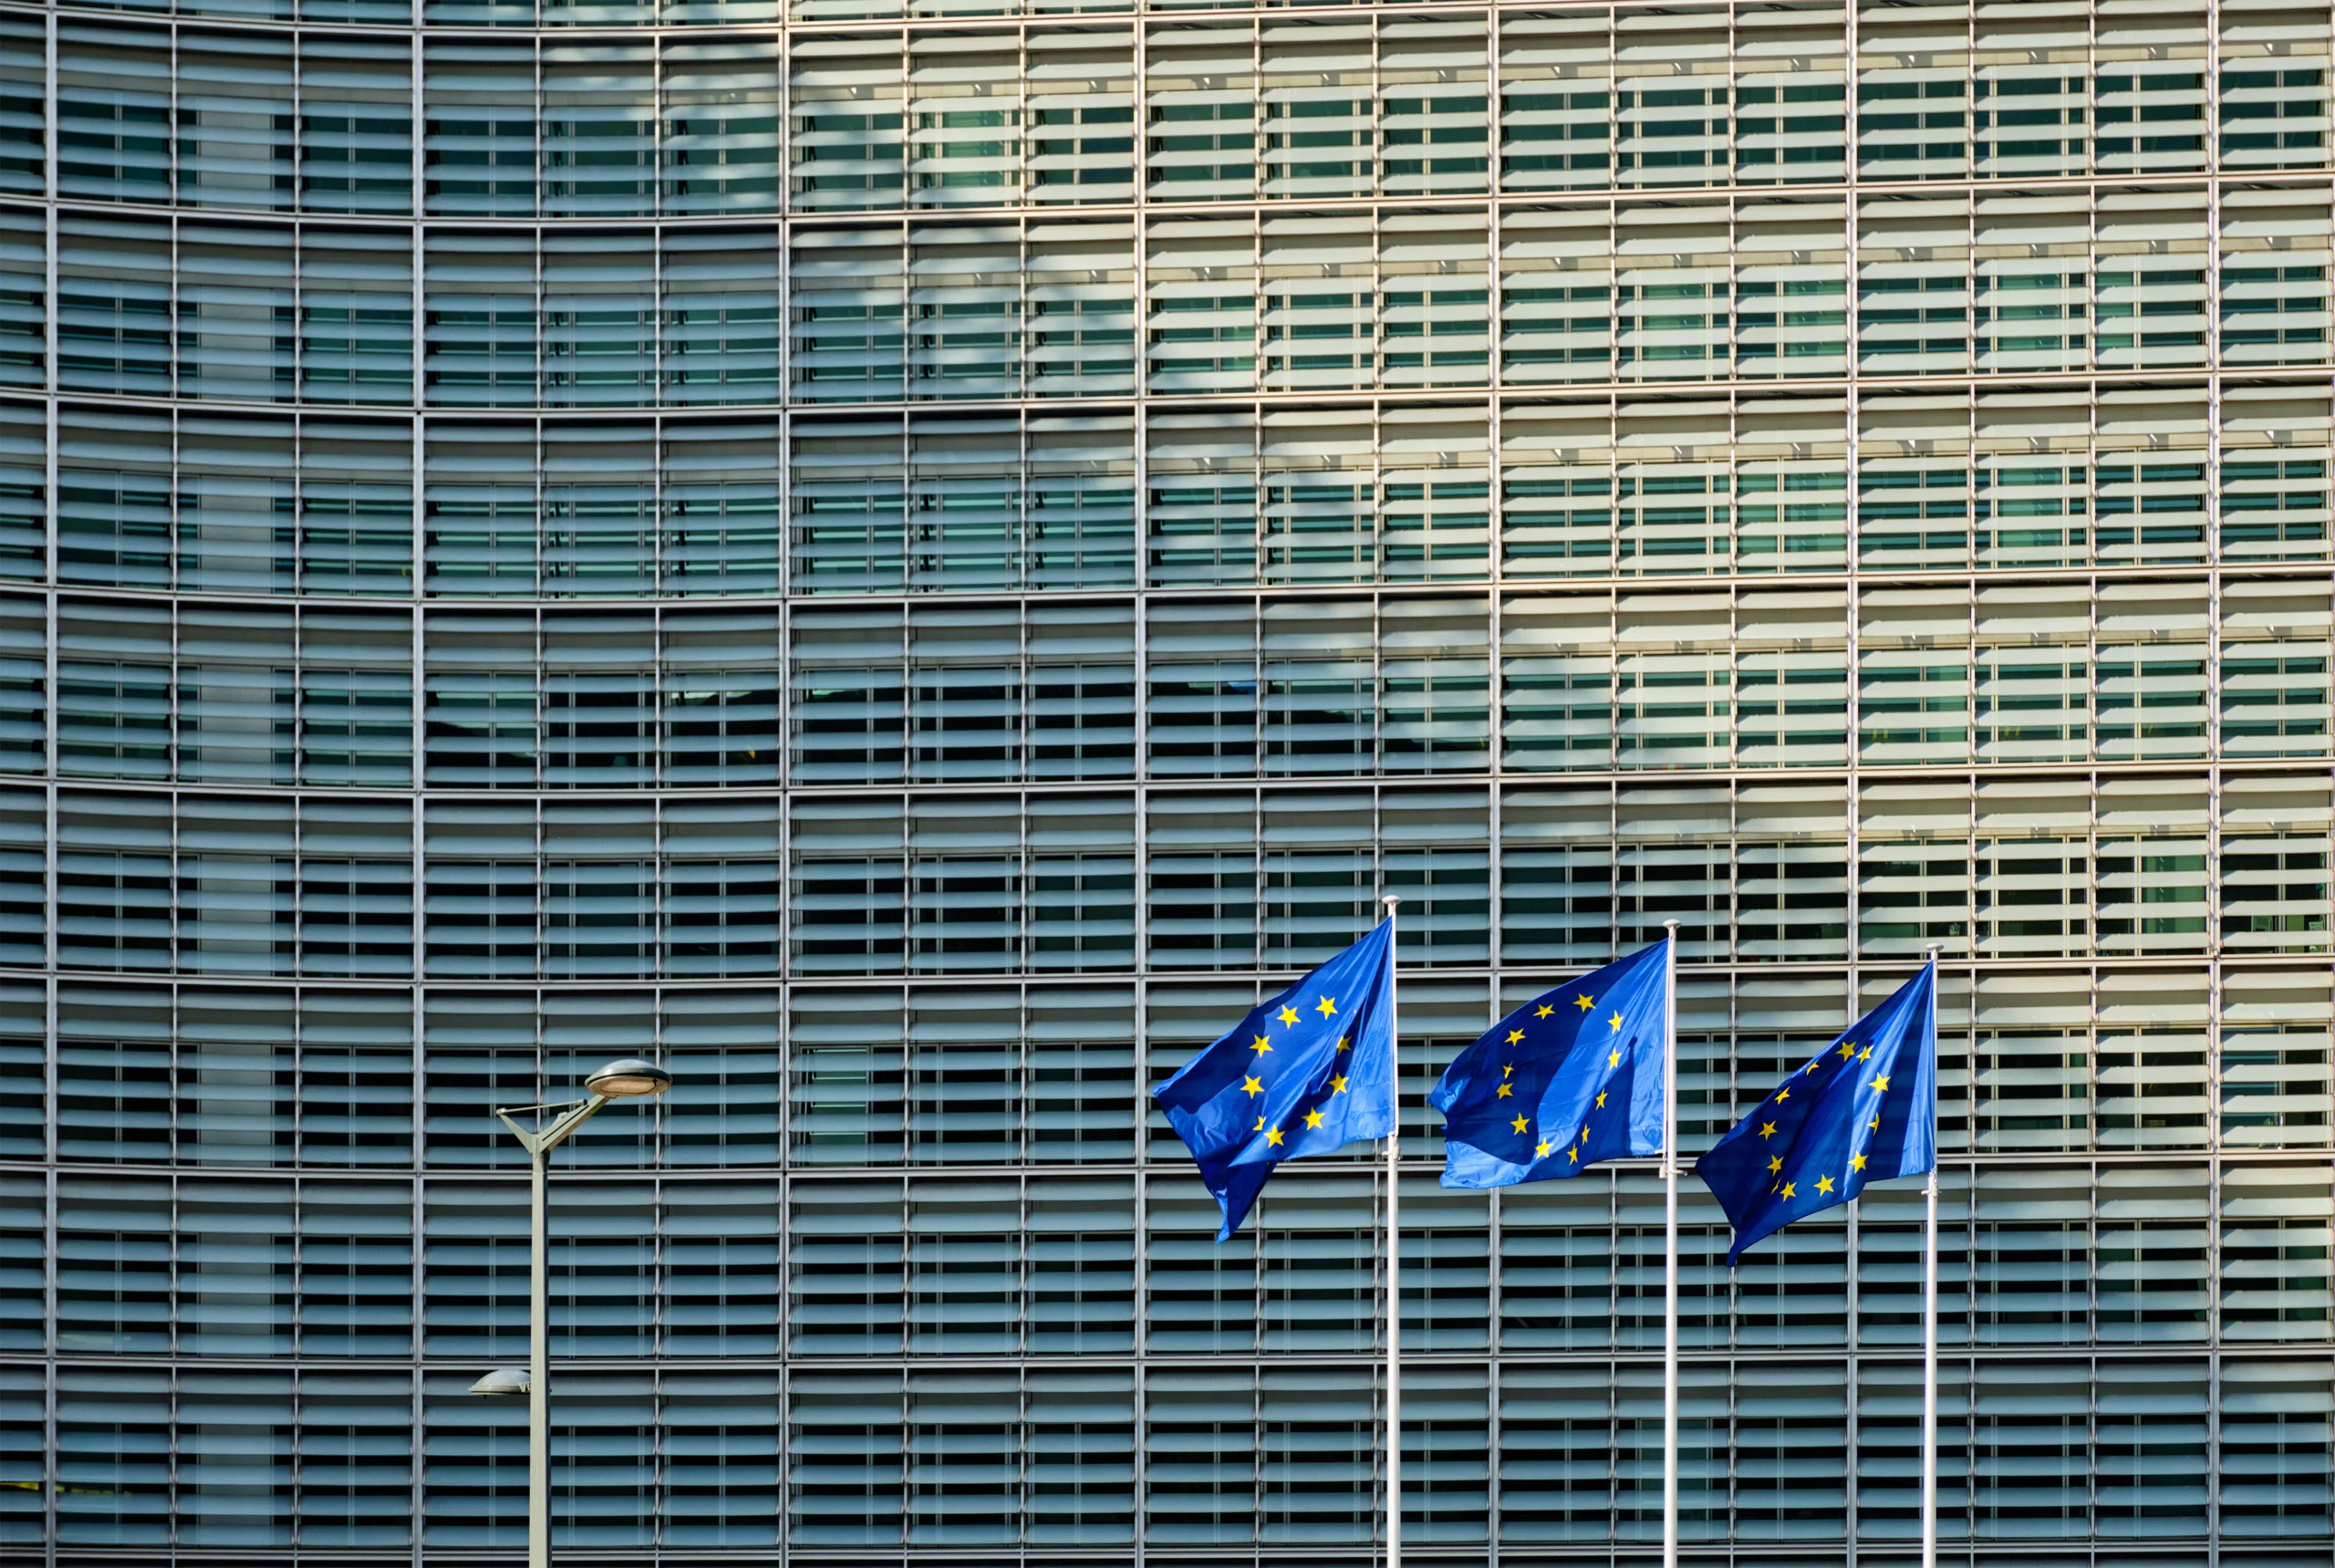 Bolsas da Europa fecham em alta após corte de juros pelo BCE